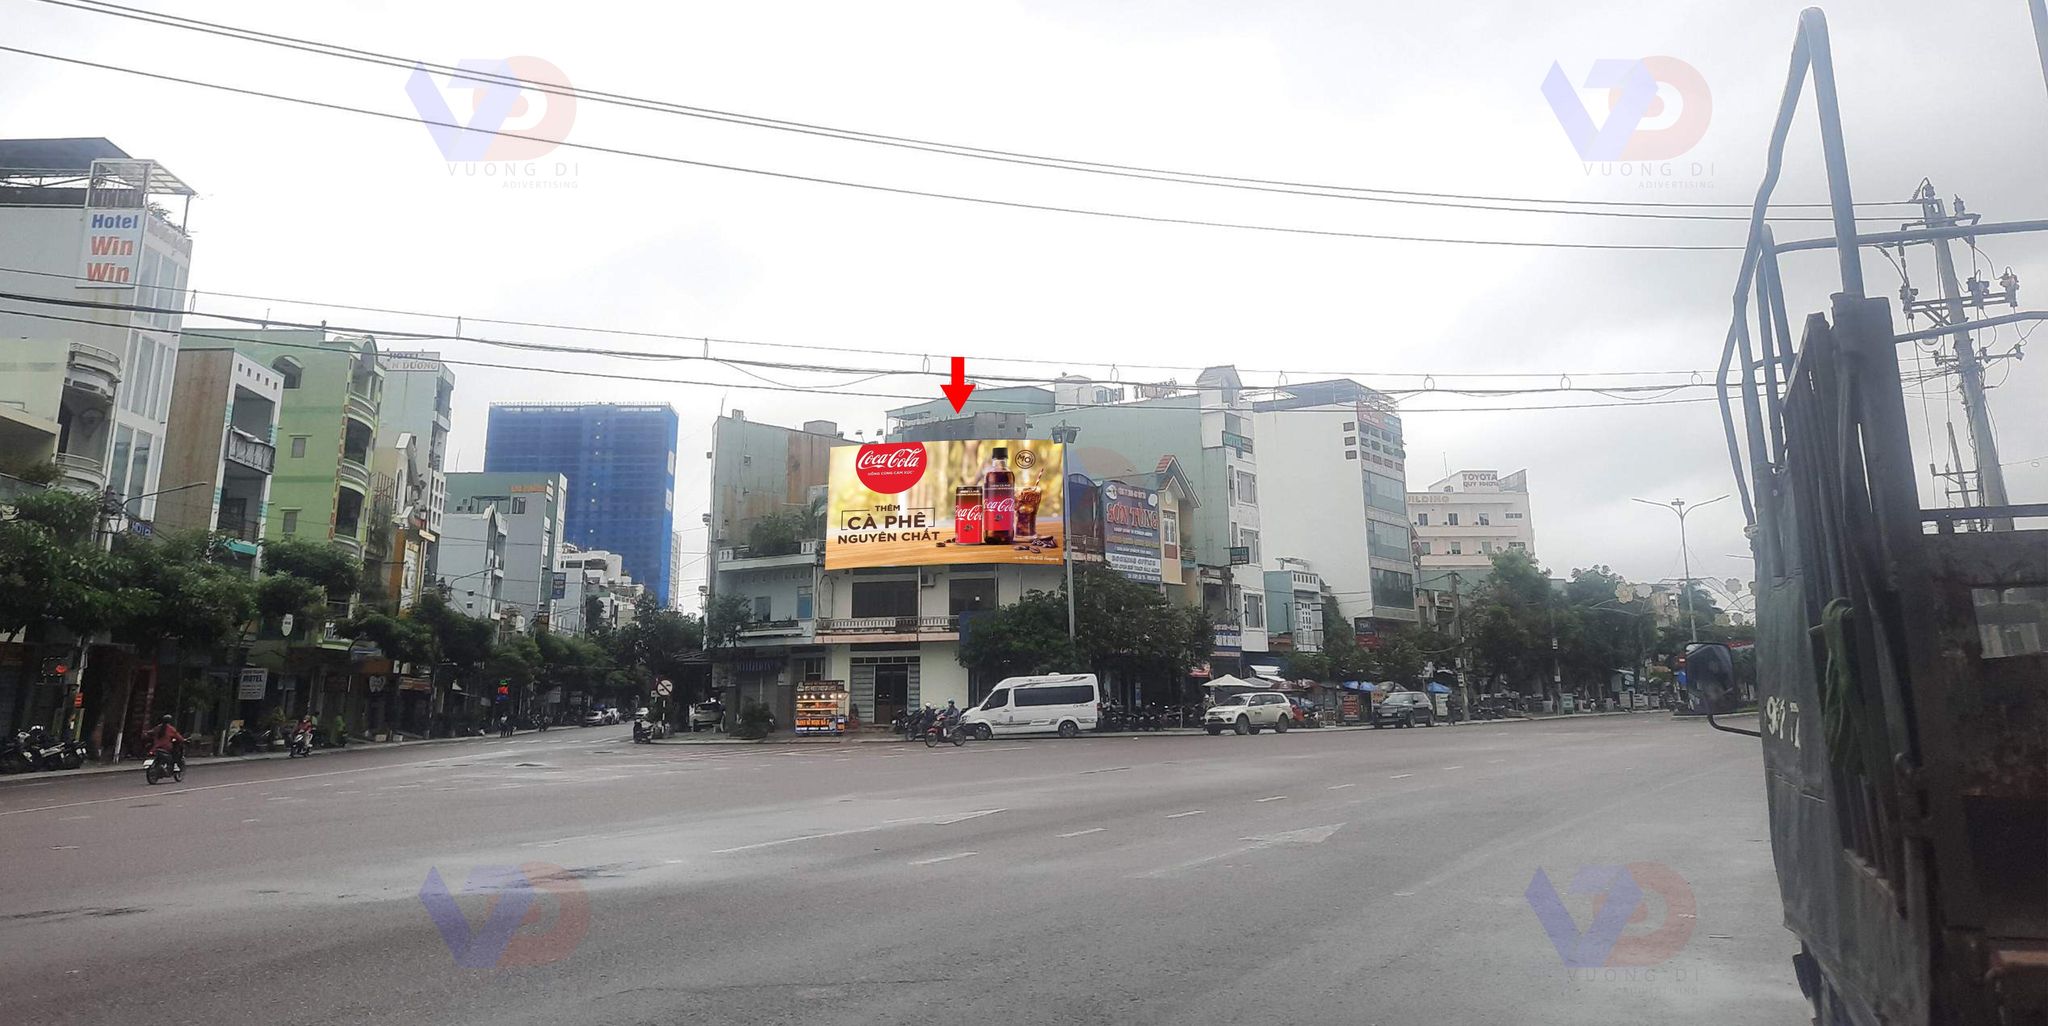 Bảng quảng cáo tại Bến xe Quy Nhơn, TP. Quy Nhơn, Bình Định